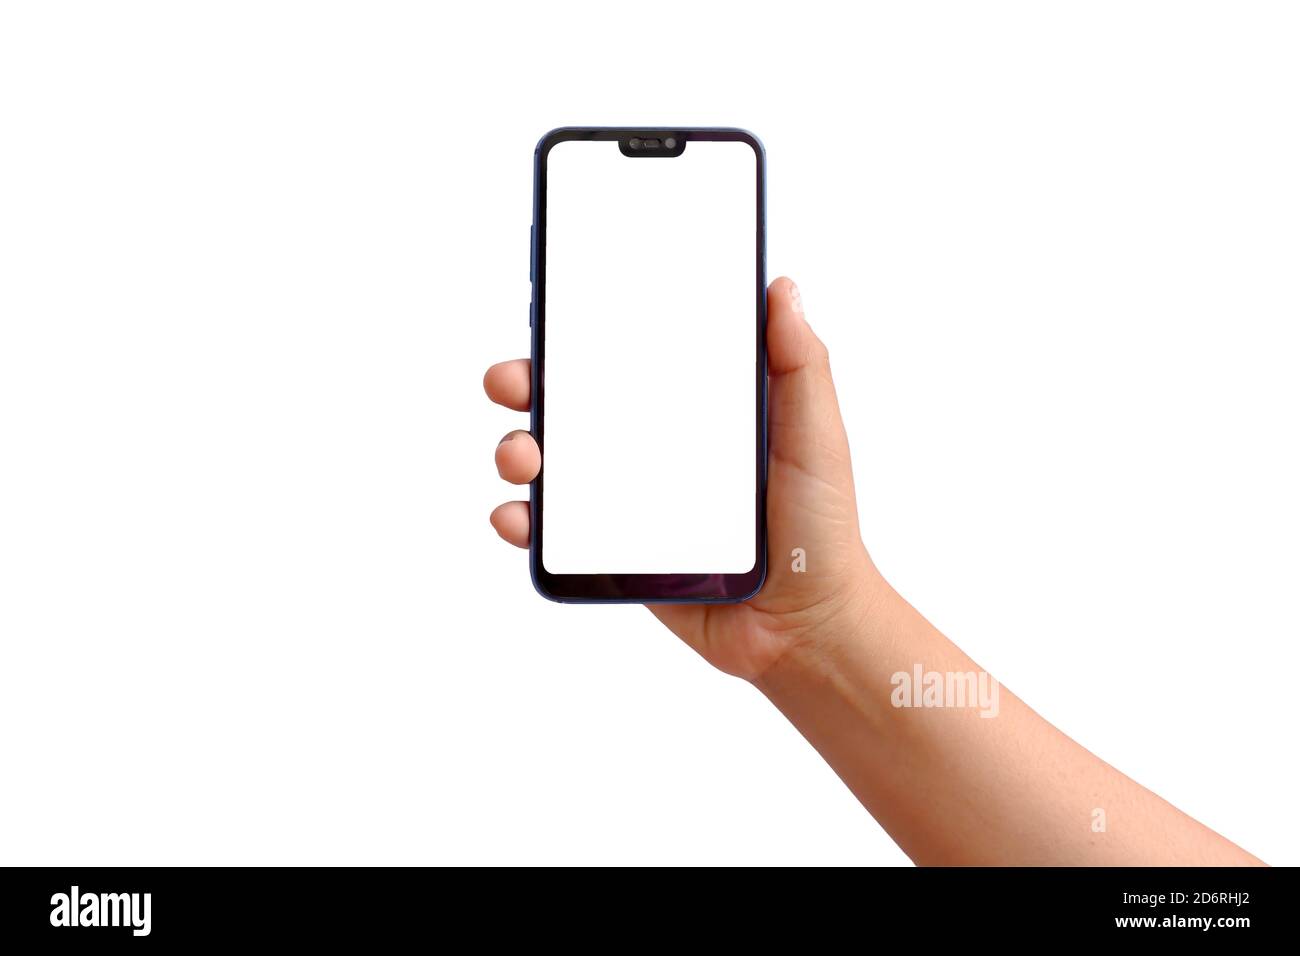 La main tient un smartphone avec un écran blanc séparé sur un fond blanc avec le masque. Banque D'Images